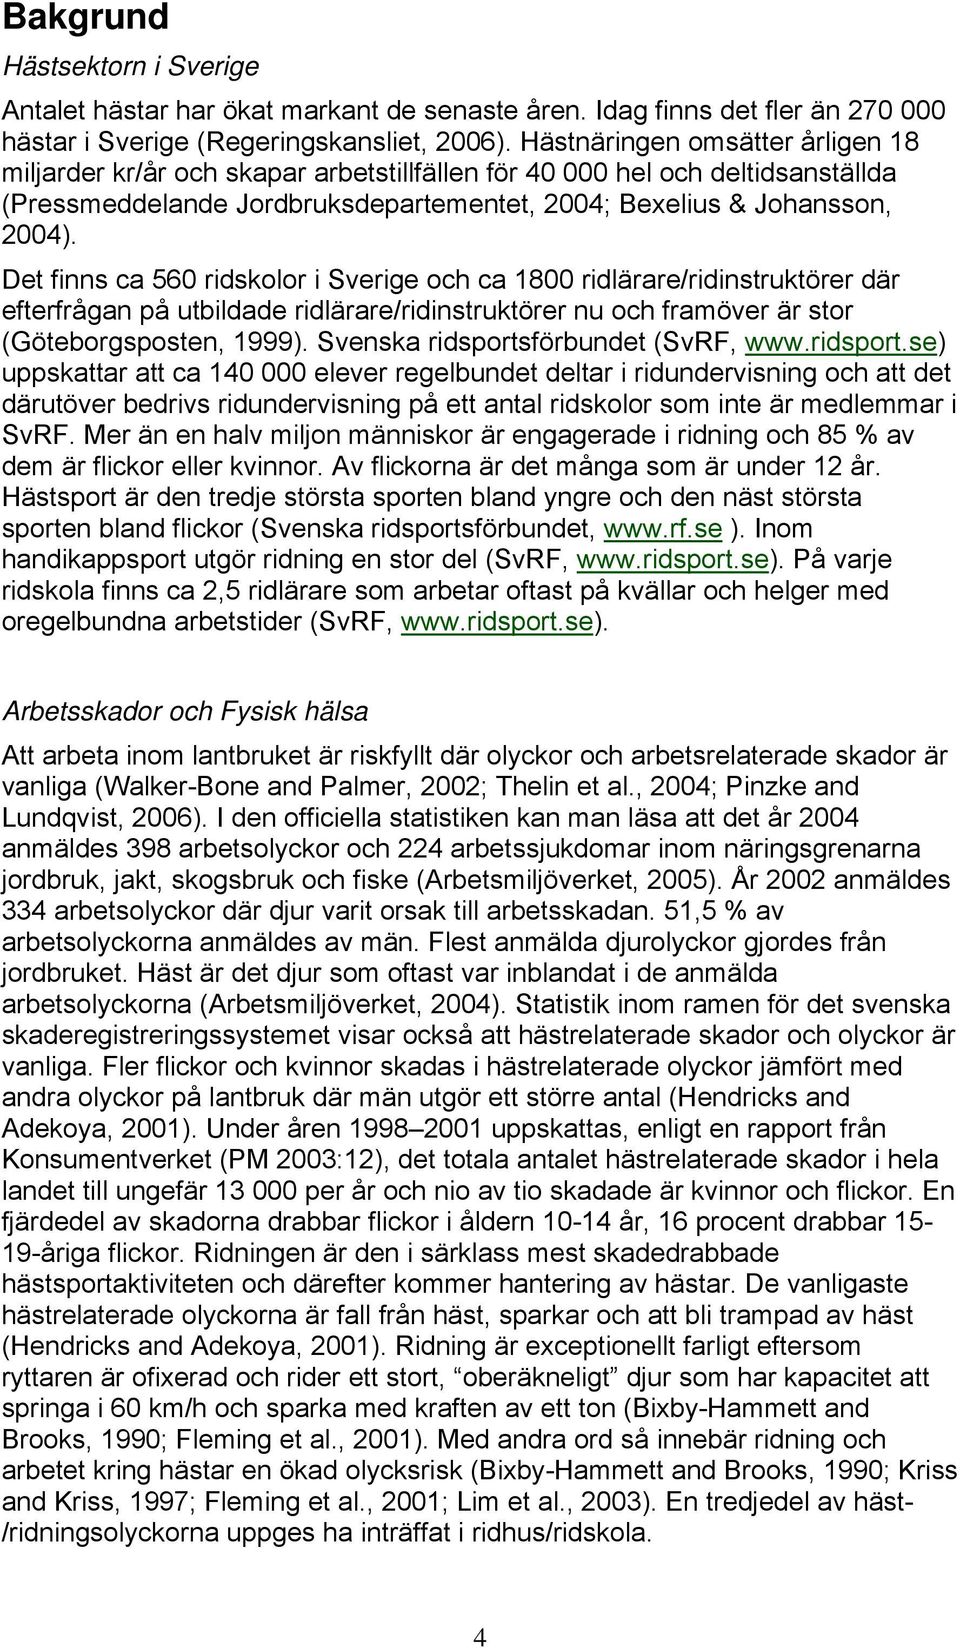 Det finns ca 560 ridskolor i Sverige och ca 1800 ridlärare/ridinstruktörer där efterfrågan på utbildade ridlärare/ridinstruktörer nu och framöver är stor (Göteborgsposten, 1999).